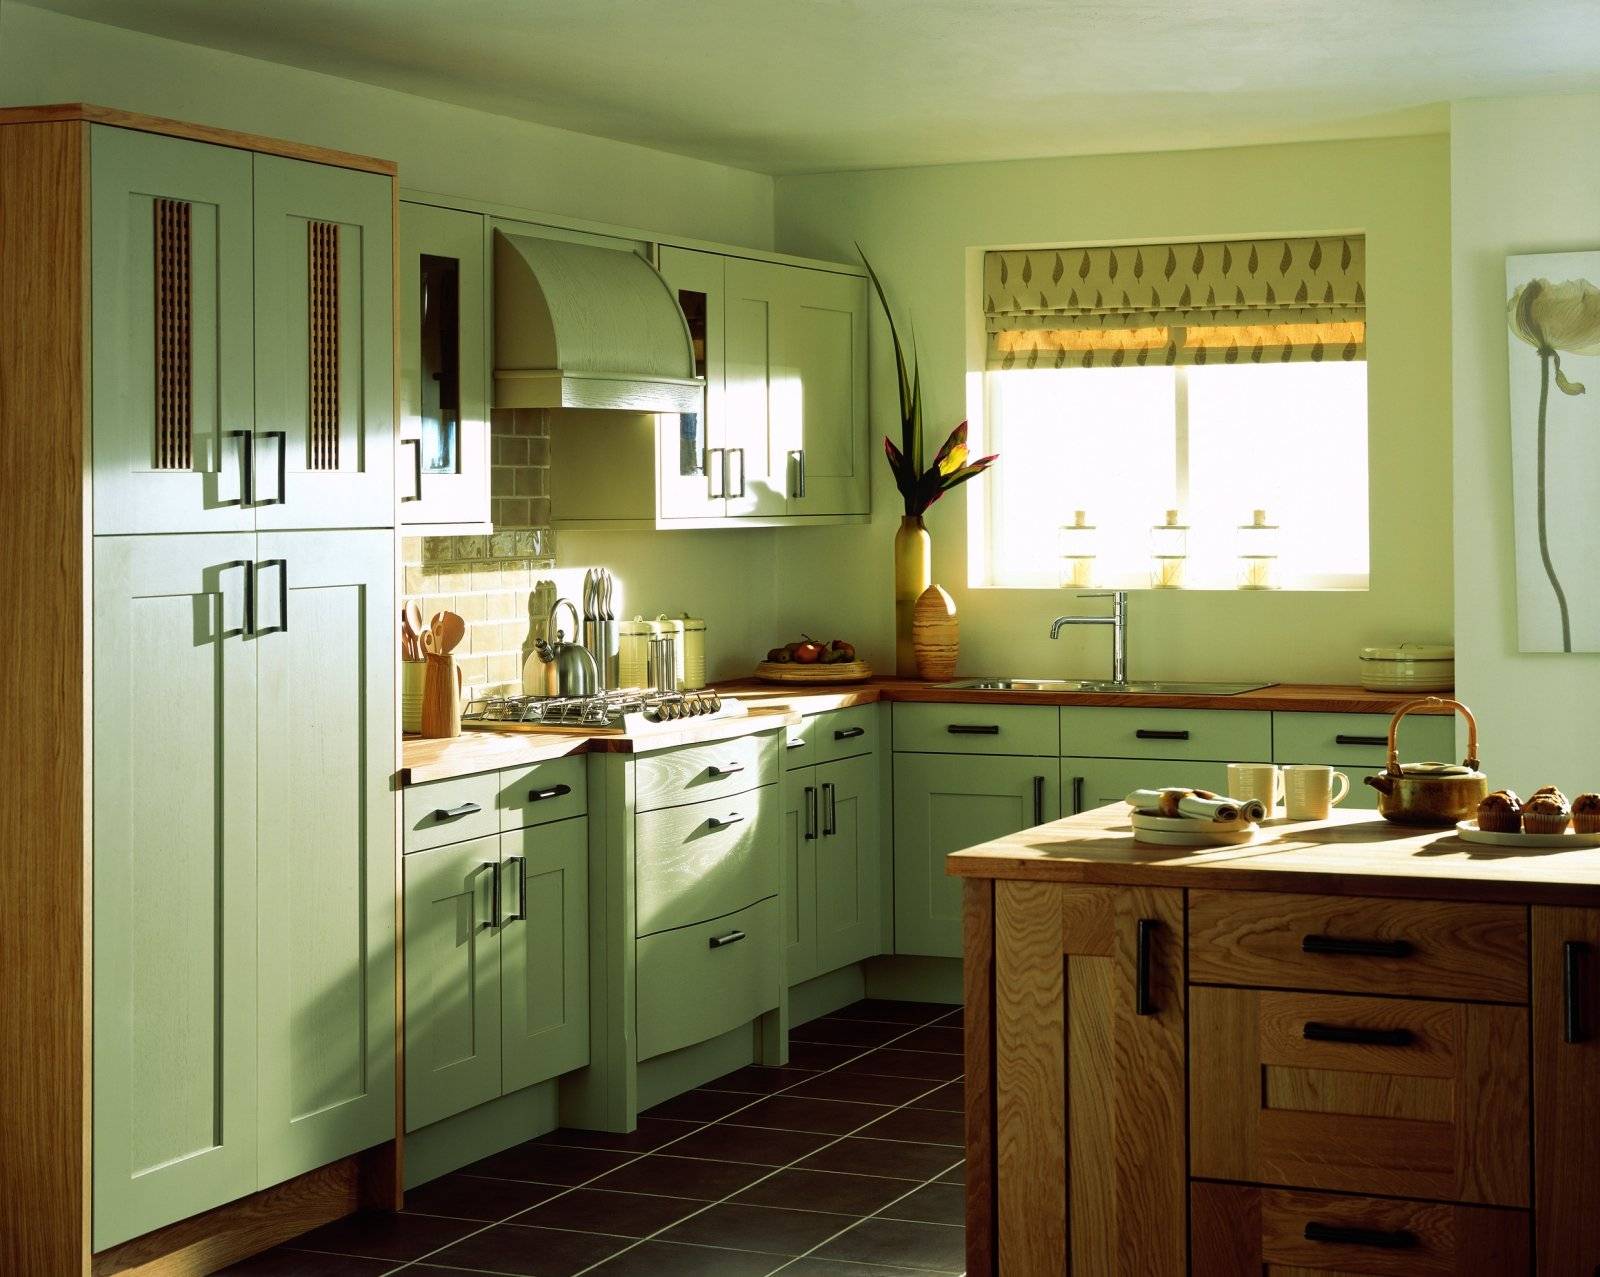 Кухня фисташкового цвета - 45 фото идей сочетания фисташкового дизайна